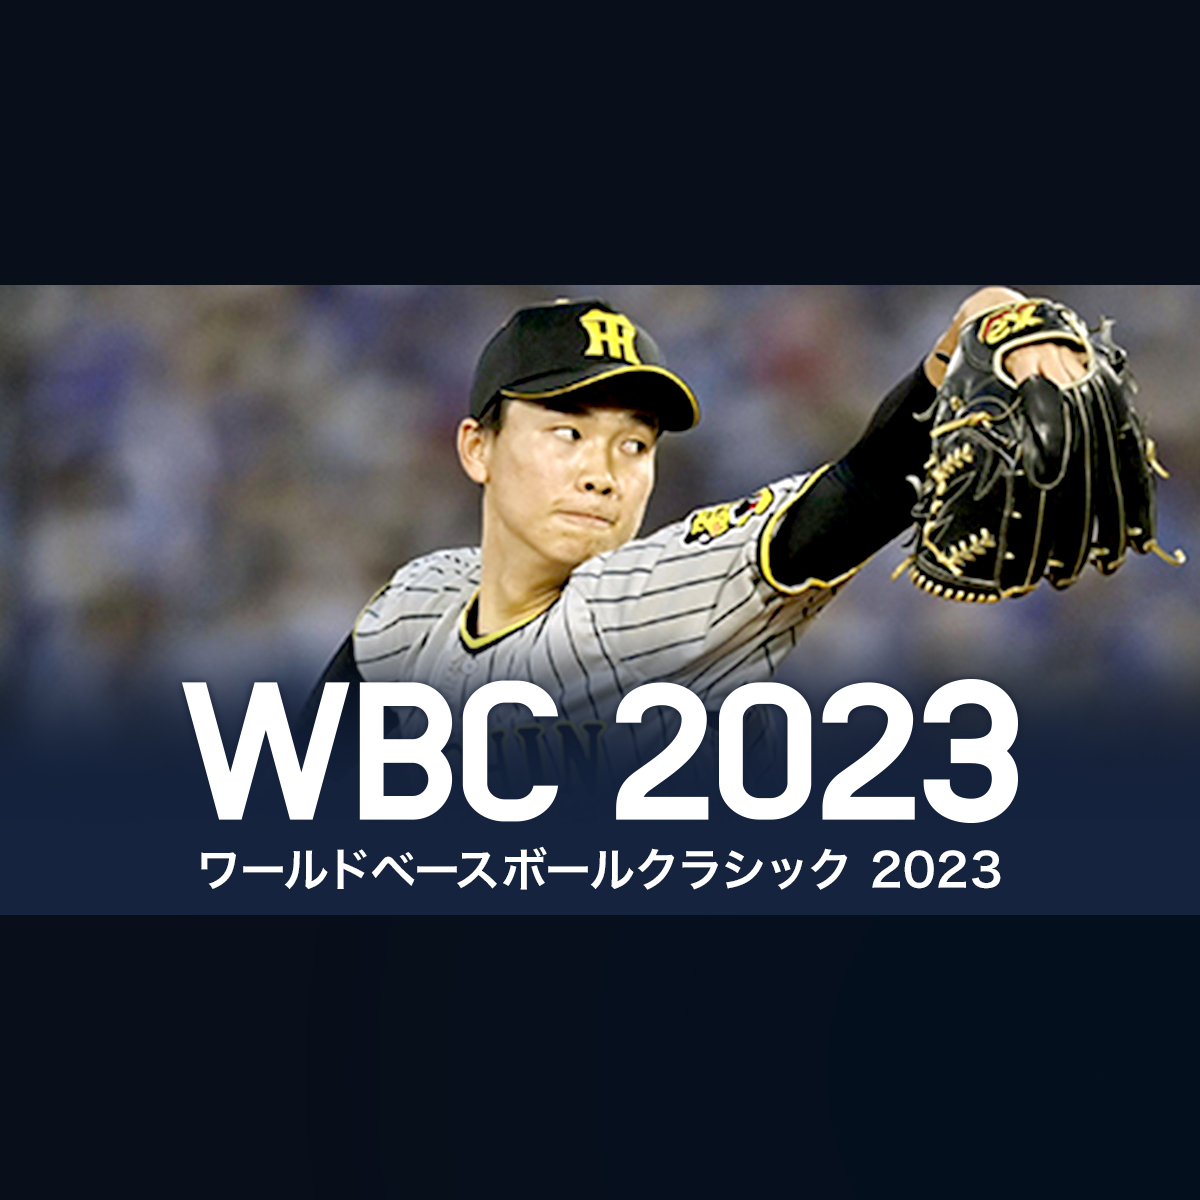 湯浅 京己選手 プロフィール | WBC 2023 ワールド・ベースボール 